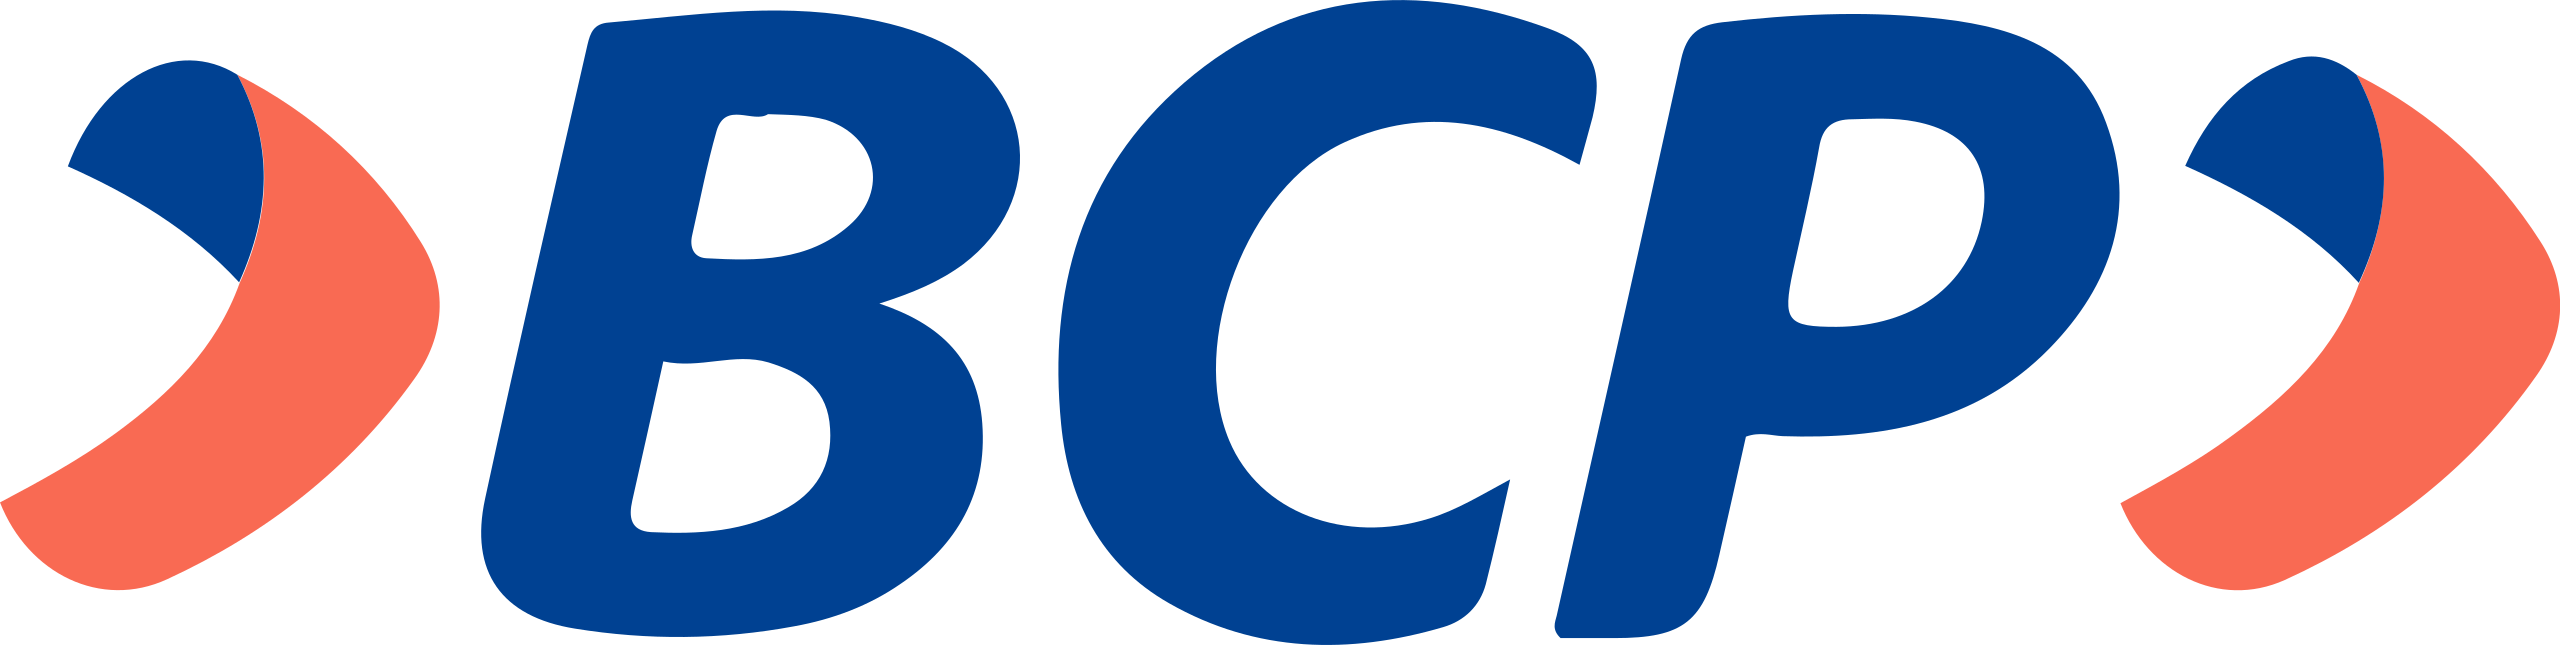 bcp logo 1-1